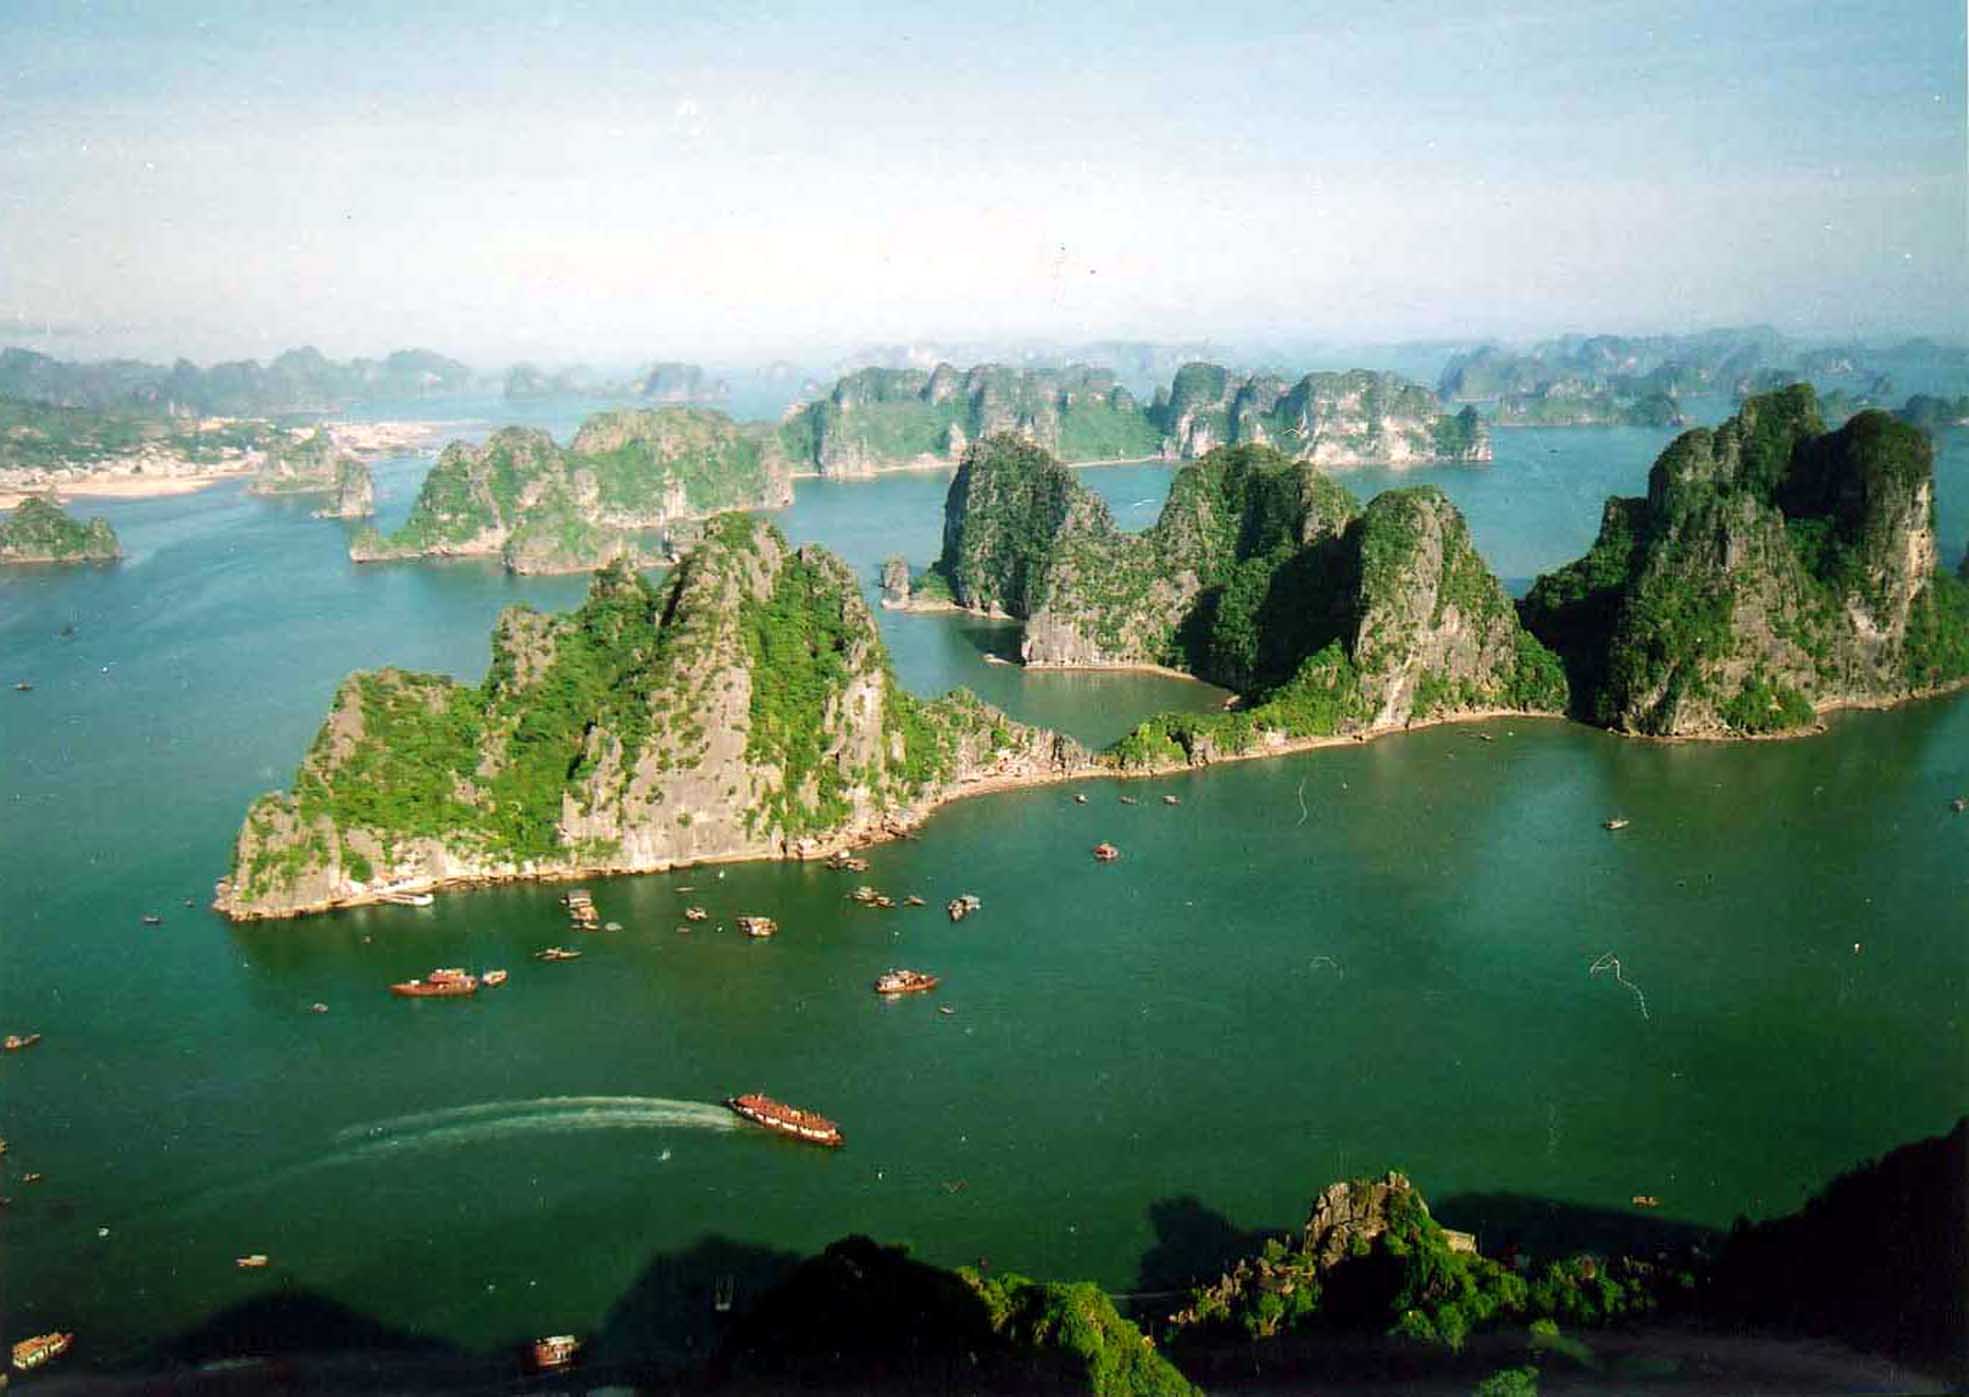 Quảng Ninh: Quảng Ninh là vùng đất tuyệt vời với nhiều địa danh du lịch nổi tiếng của Việt Nam. Nơi đây có Vịnh Hạ Long, Núi Yên Tử, Thiên Cung, và nhiều địa điểm du lịch khác. Hãy để Quảng Ninh trở thành điểm đến tiếp theo của bạn.